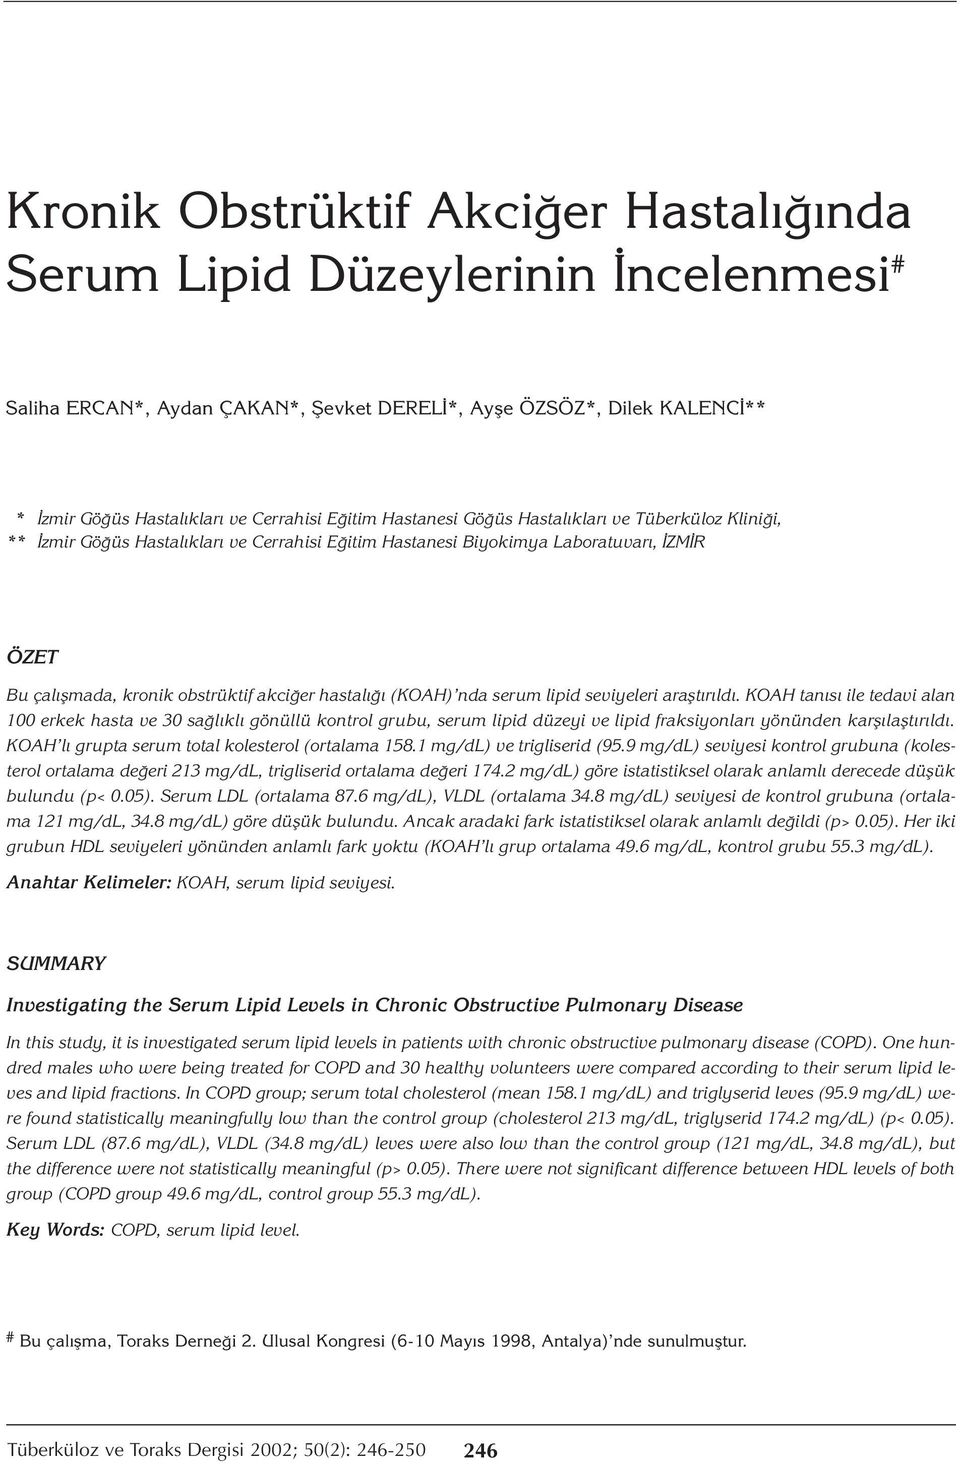 (KOAH) nda serum lipid seviyeleri araştırıldı. KOAH tanısı ile tedavi alan 100 erkek hasta ve 30 sağlıklı gönüllü kontrol grubu, serum lipid düzeyi ve lipid fraksiyonları yönünden karşılaştırıldı.